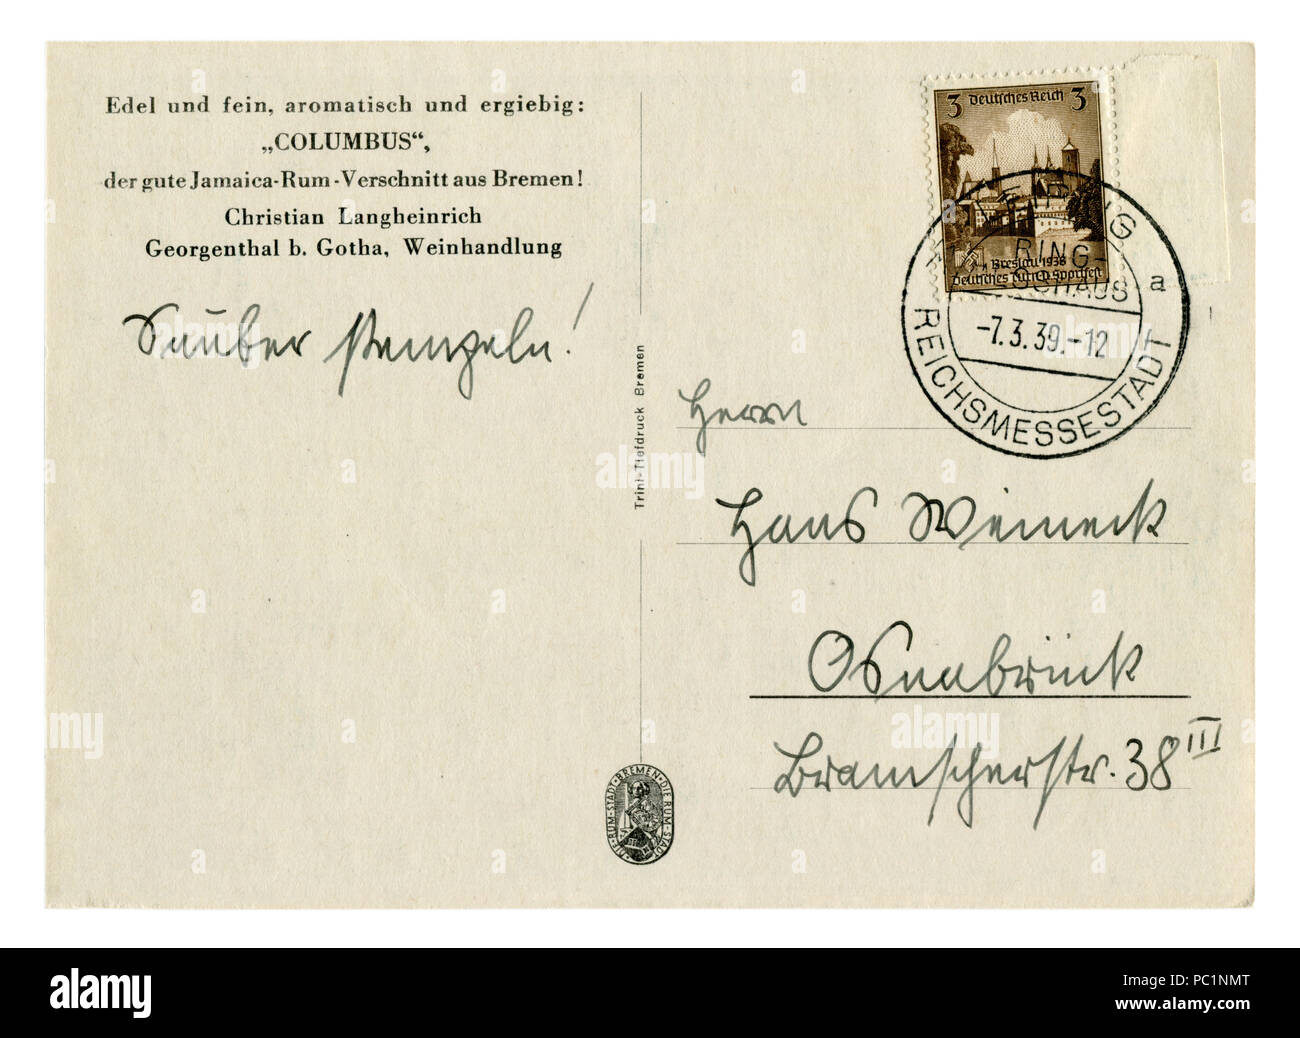 Zurück der historischen deutschen Postkarte (PC 1 HJB): Werbung Hawaiian rum 'Columbus', Stornierung 7.3.39, Briefmarke Breslau. Deutschland, Drittes Reich Stockfoto